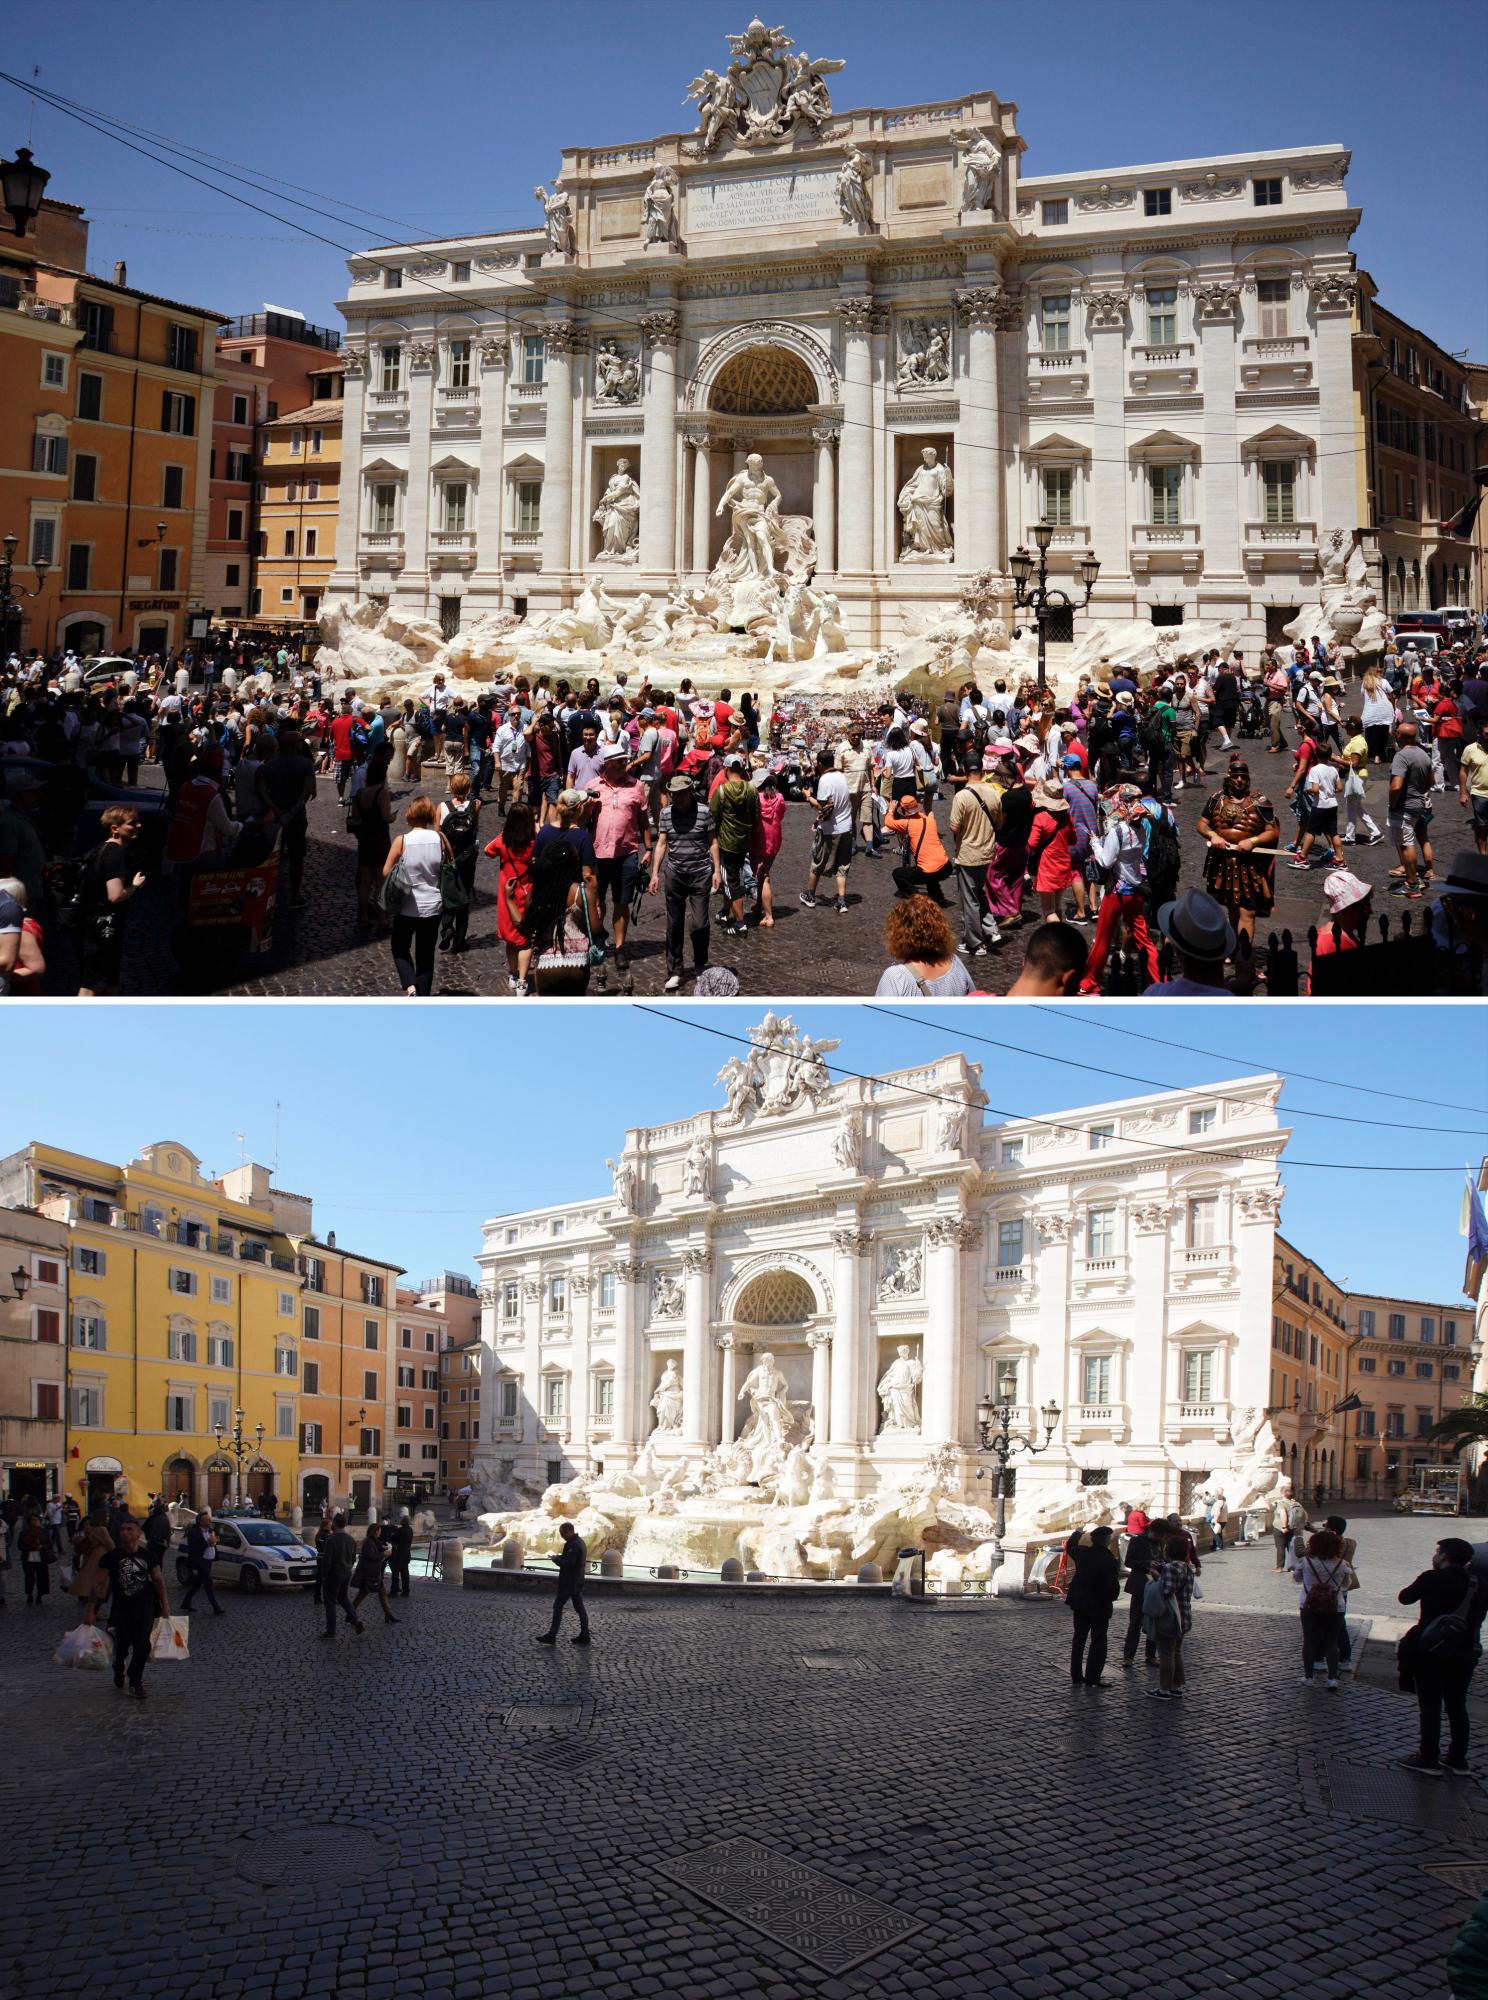 En esta imagen combinada, gente caminando en torno a la Fontana de Trevi, en Roma, a las 9:48 del lunes 12 de junio de 2017, arriba, y a las 13:00 del miércoles 11 de marzo de 2020. El grave brote de un nuevo coronavirus en Italia ha vaciado los monumentos de turistas y romanos. 